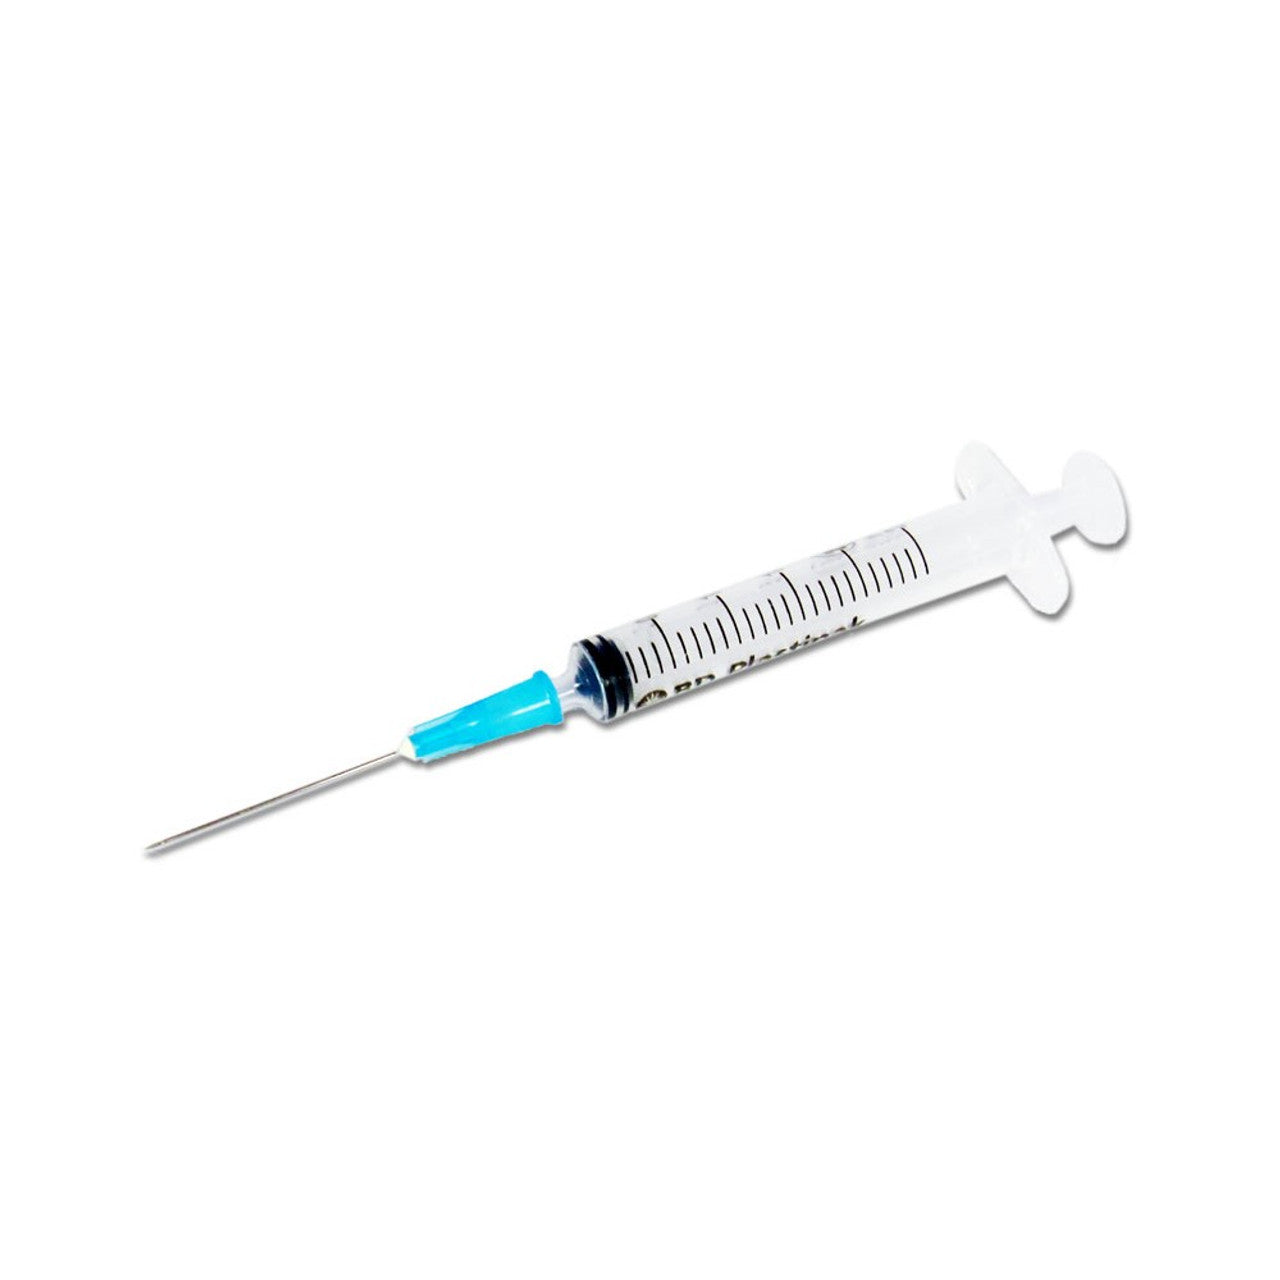 Syringe 1ml Incl 25mm 23G Needle